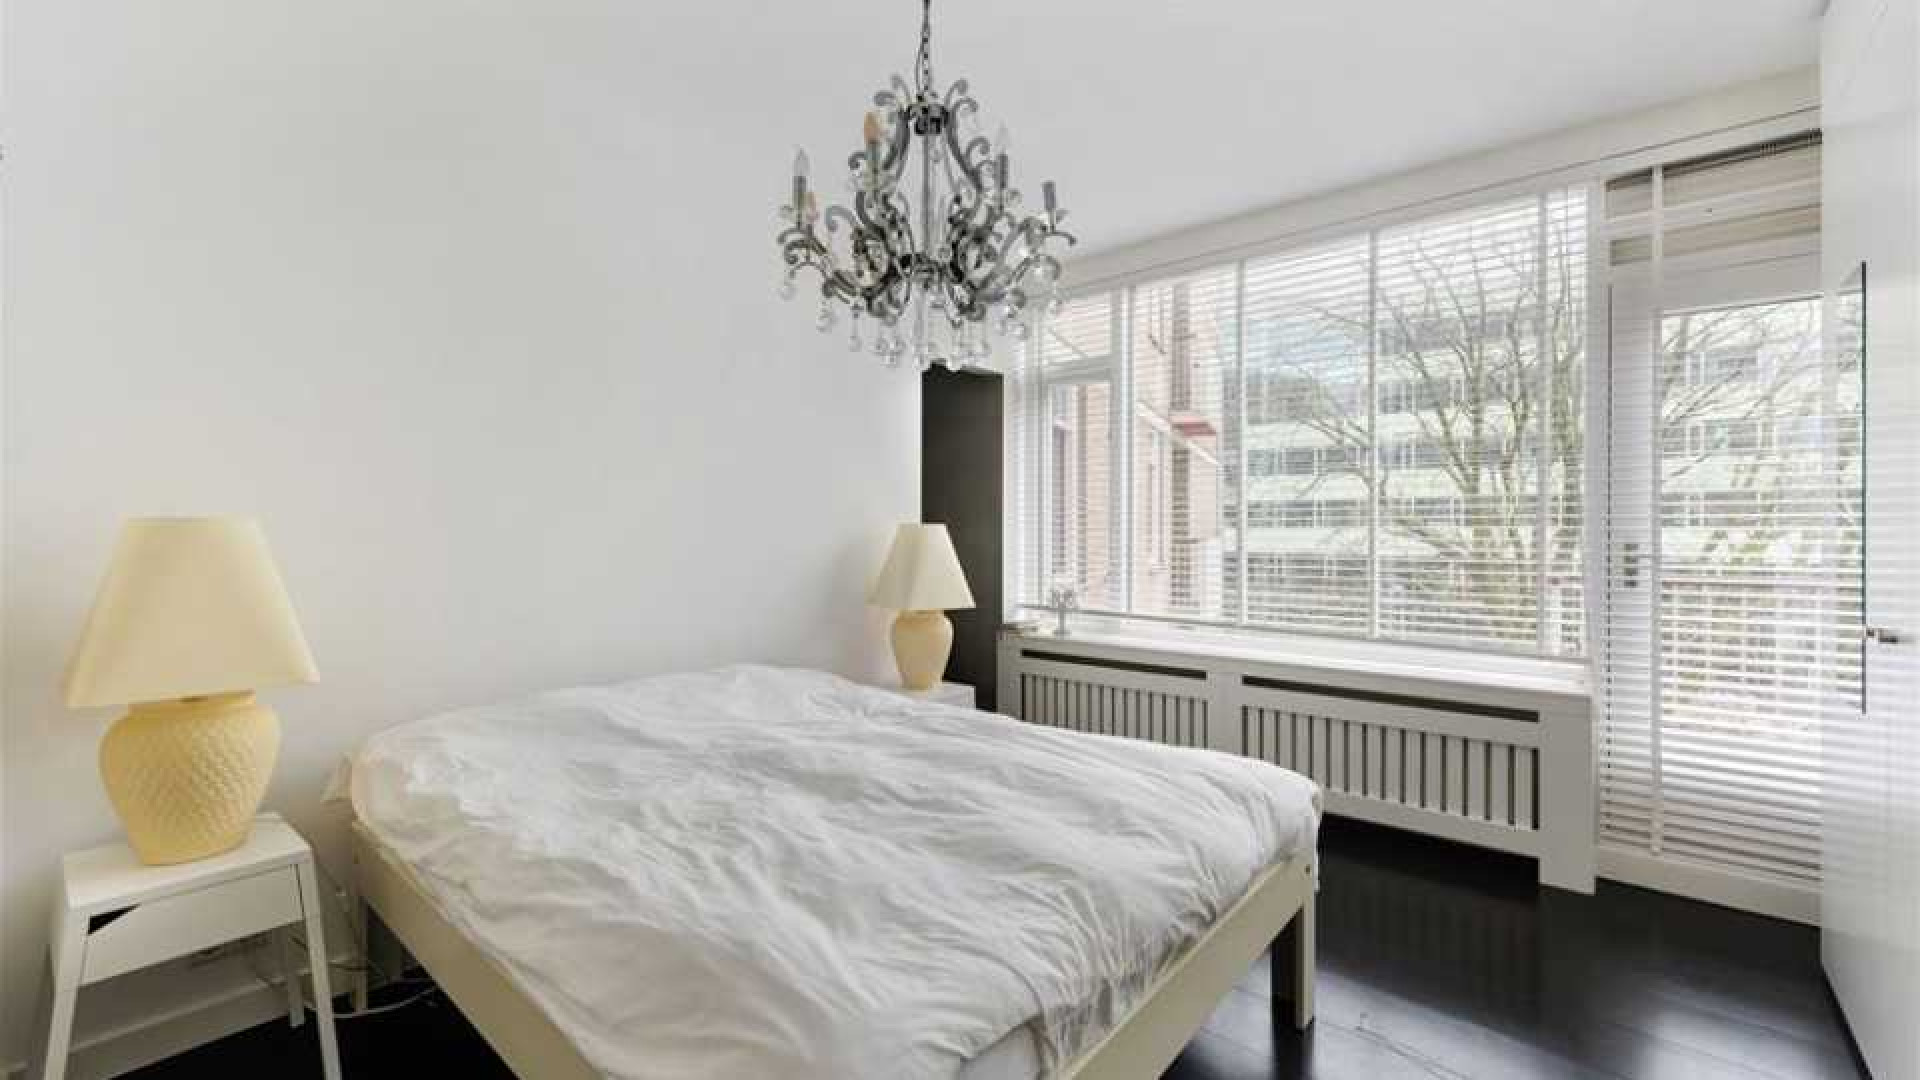 Actrice Renee Soutendijk koopt luxe appartement in Amsterdam Zuid. Zie foto's